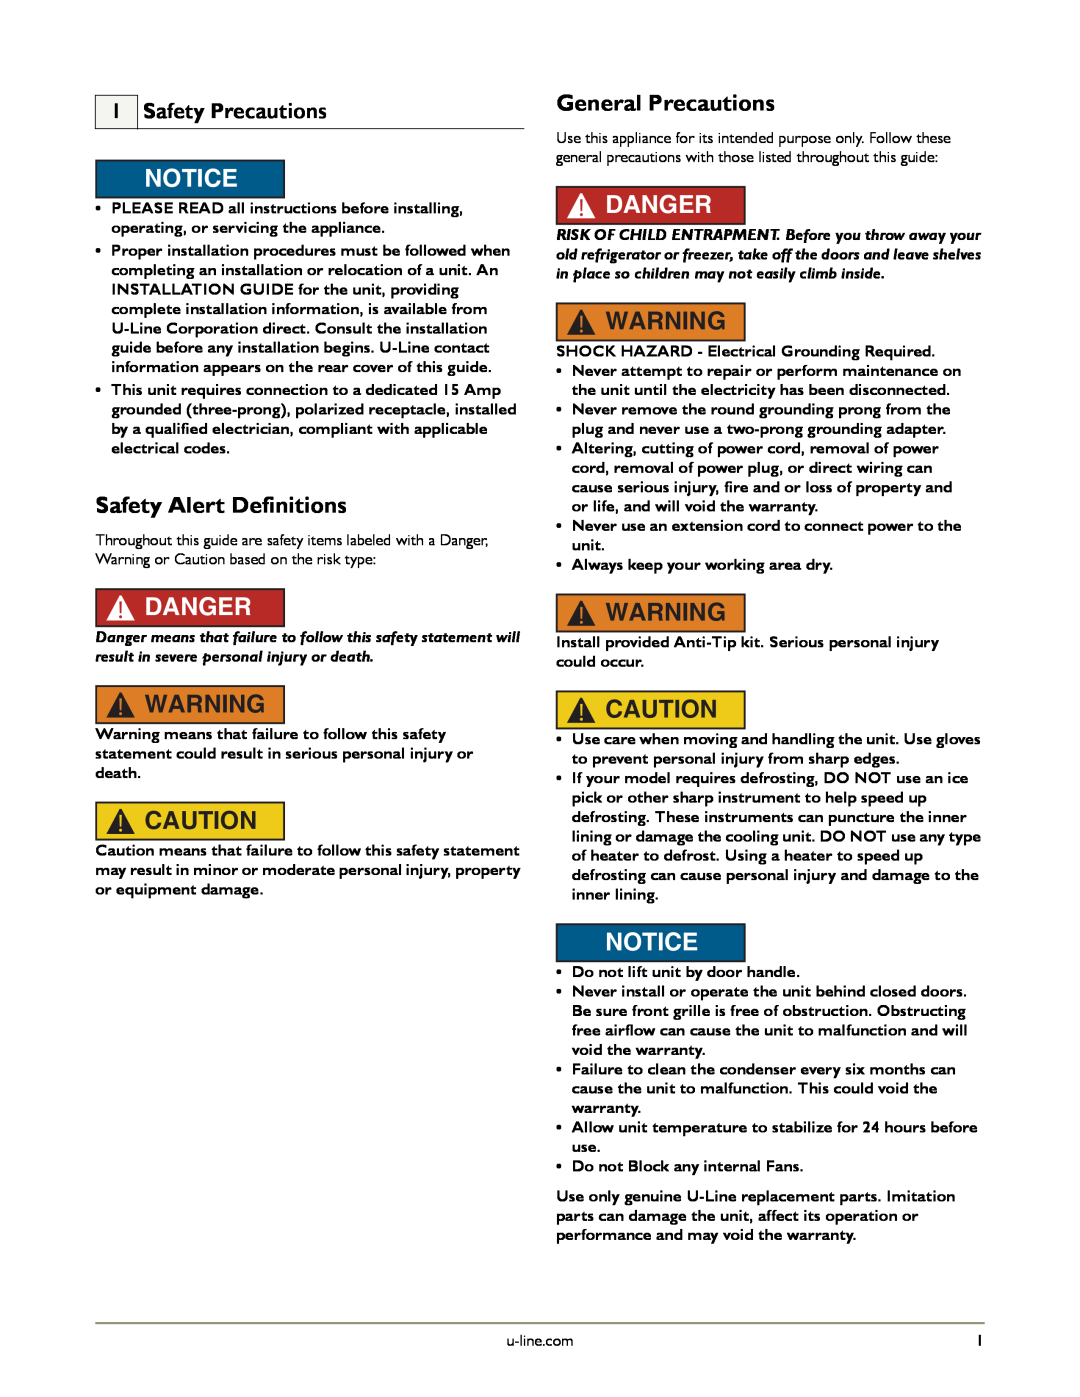 U-Line U-2175RCS-00, U-2175RCS-01, U-2175RCS-22 Safety Alert Definitions, General Precautions, Safety Precautions, Danger 